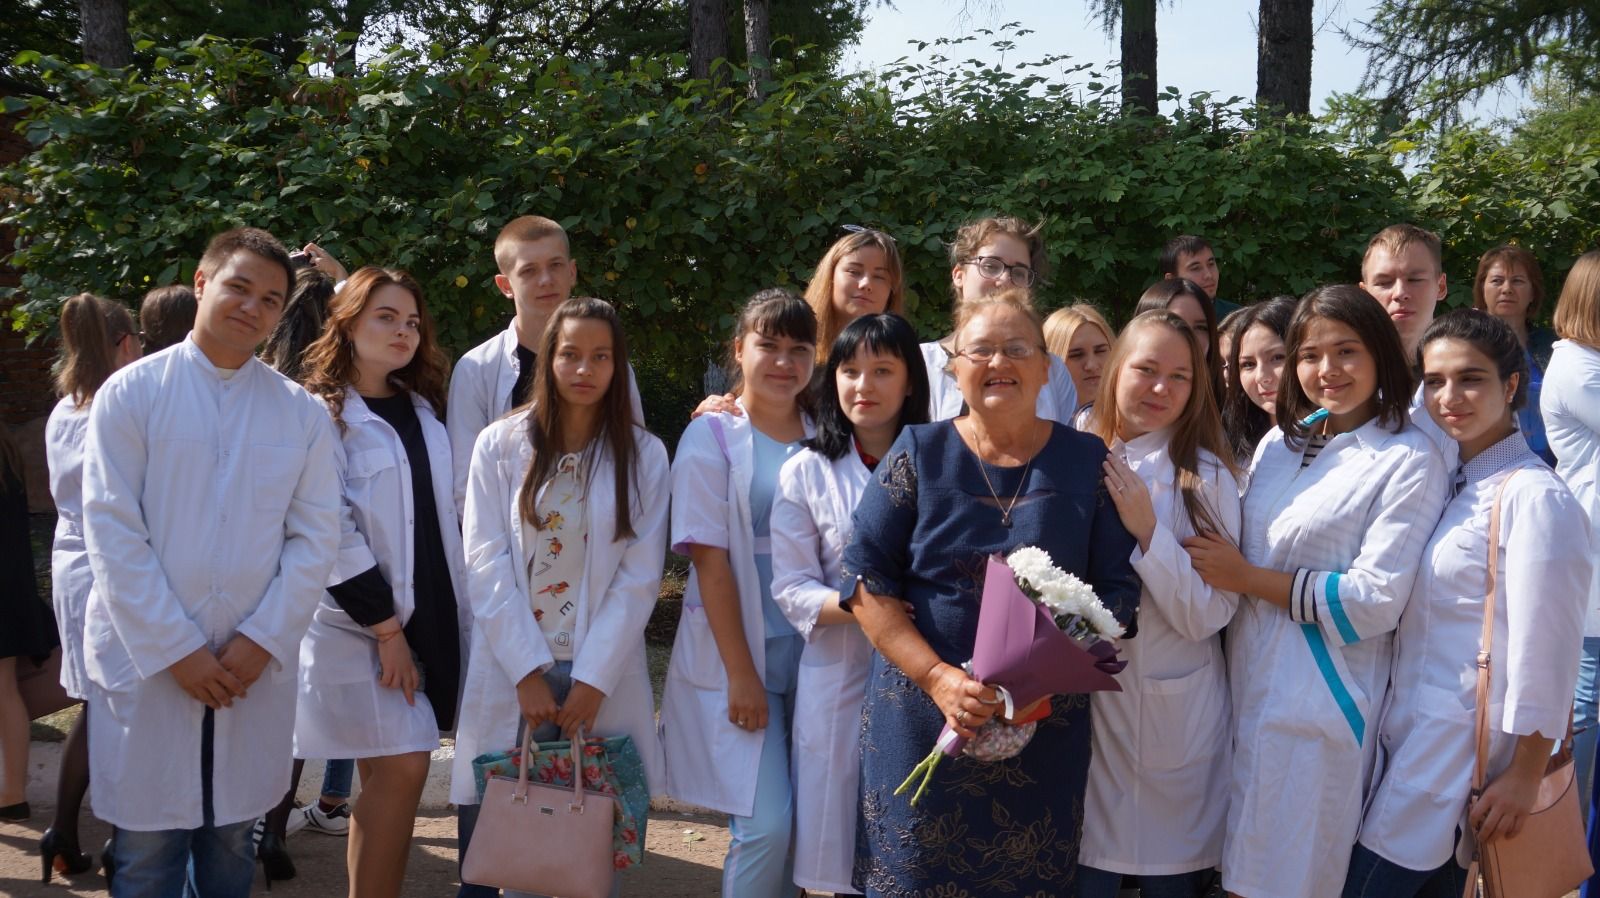 Вера Богачук 43 года работает в Бугульминском медицинском училище